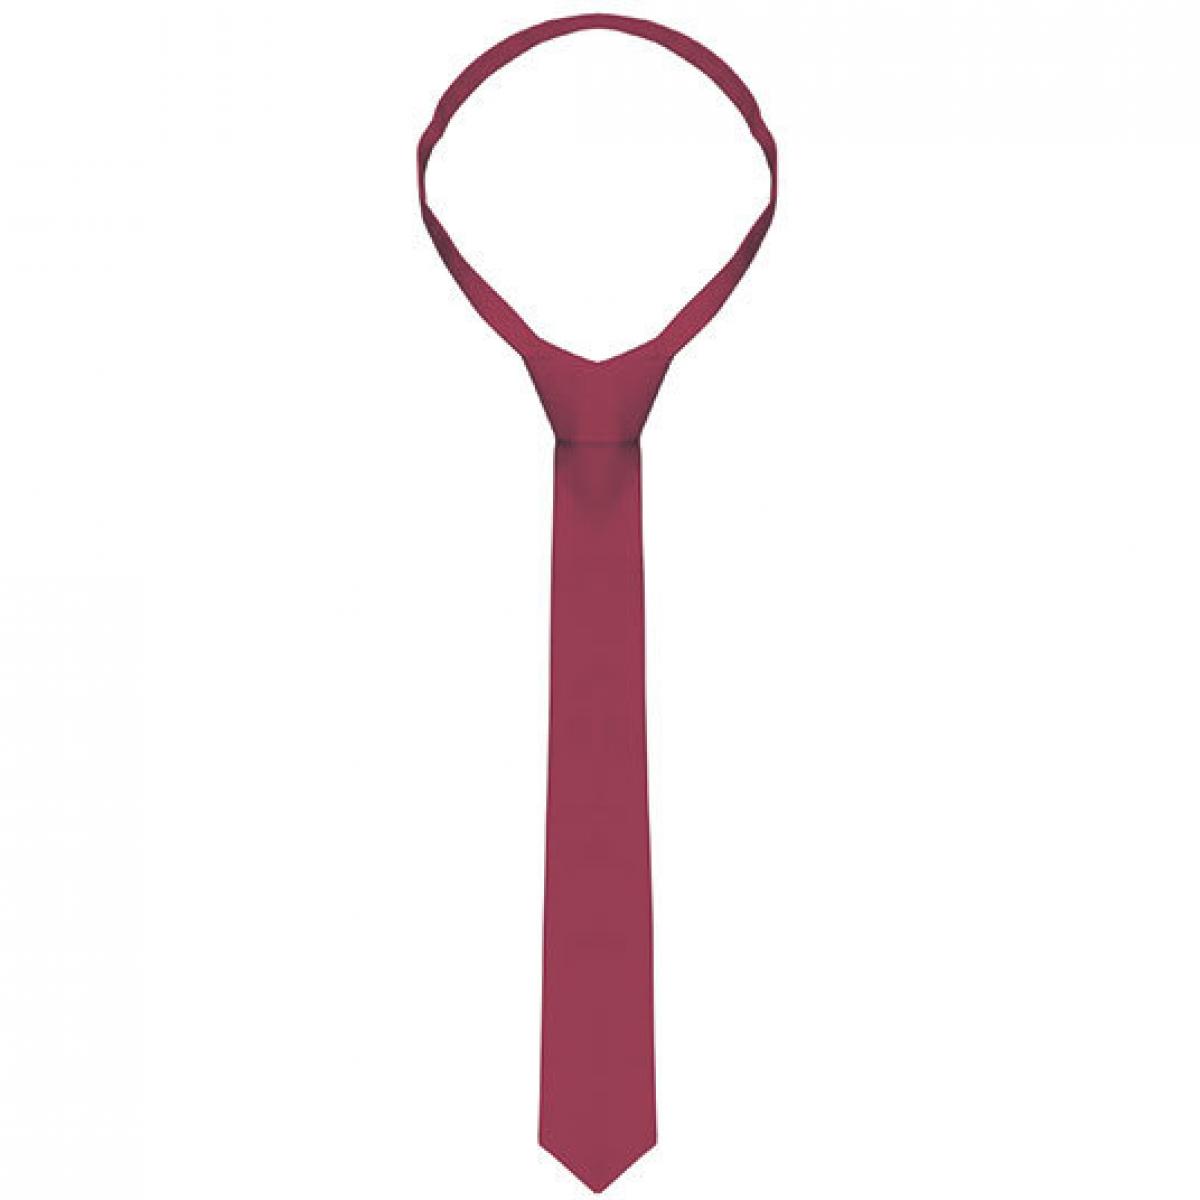 Hersteller: Karlowsky Herstellernummer: AK4 Artikelbezeichnung: Krawatte / 148 x 6,5 cm Farbe: Bordeaux (ca. Pantone 209C)